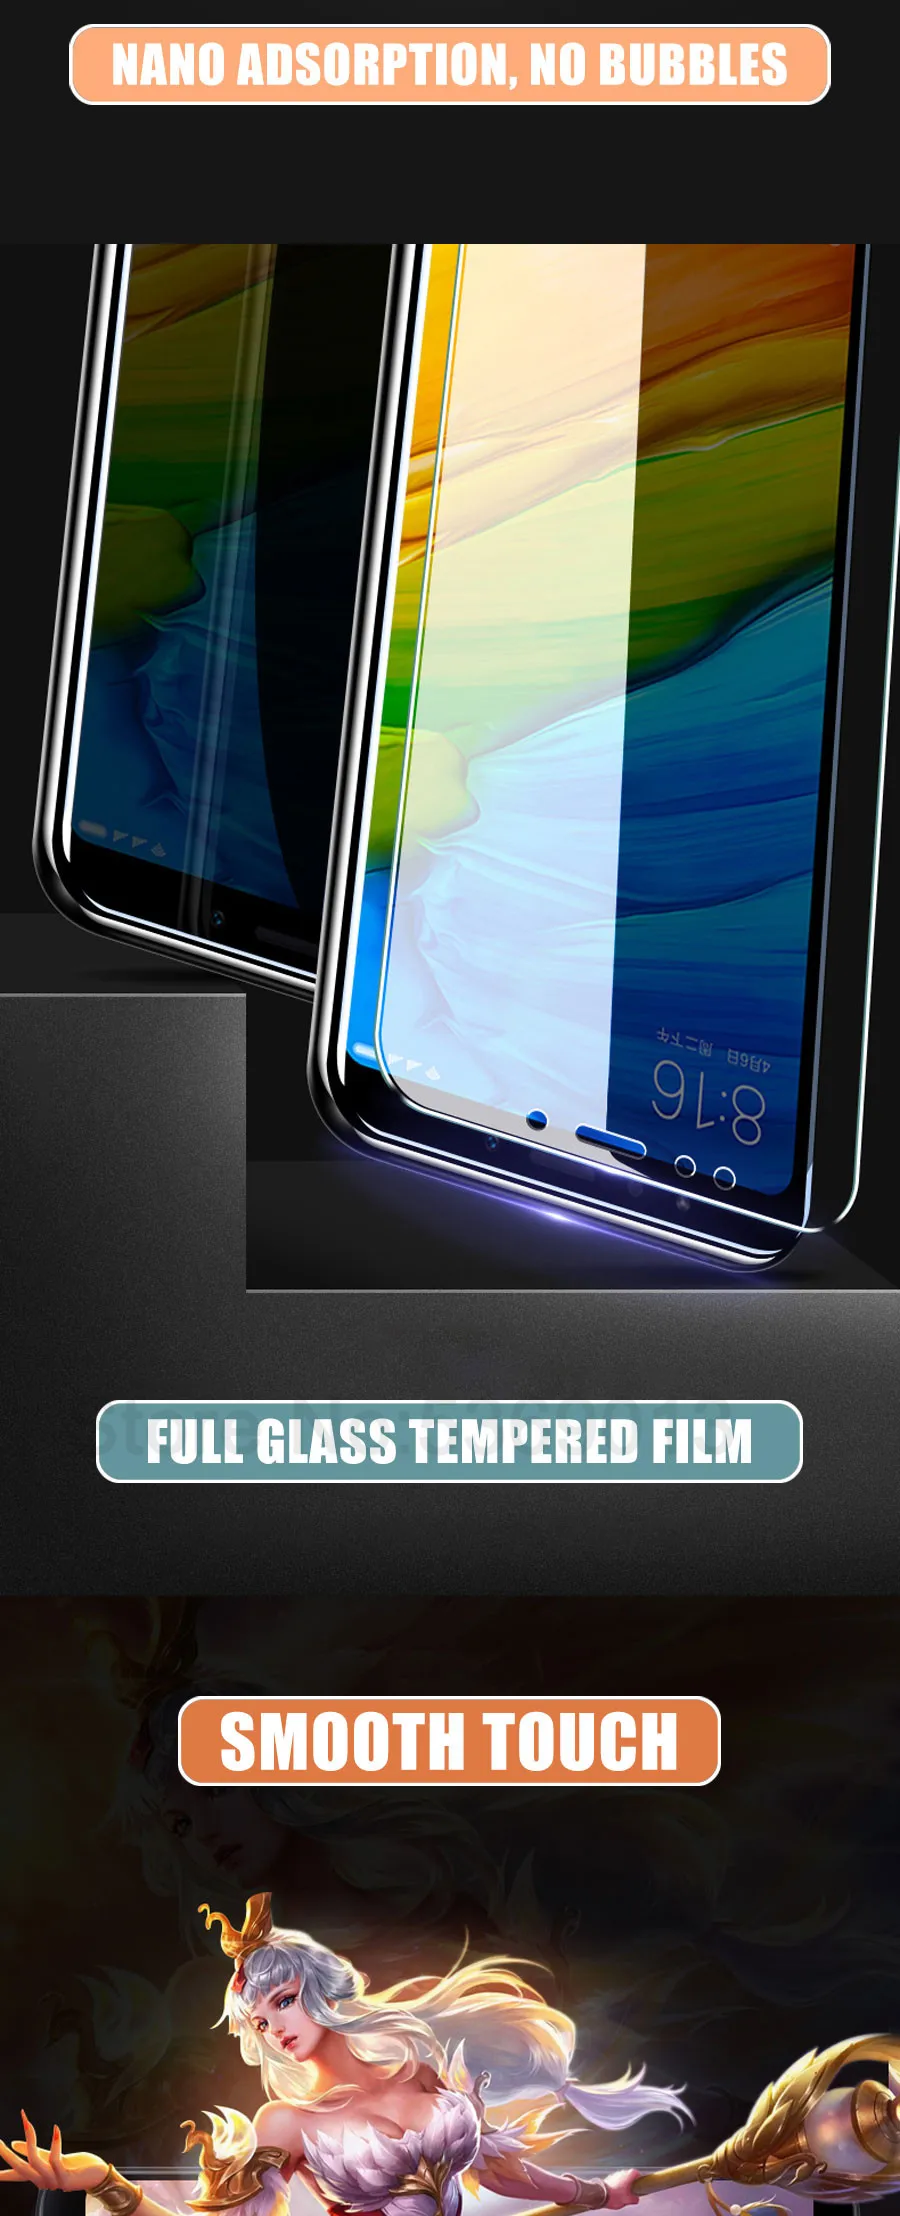 Защитное стекло 9H для Xiaomi Redmi 5 Plus 5A S2 4 4X 4A K20 Note 4 4X5 5A Pro закаленное защитное стекло для экрана